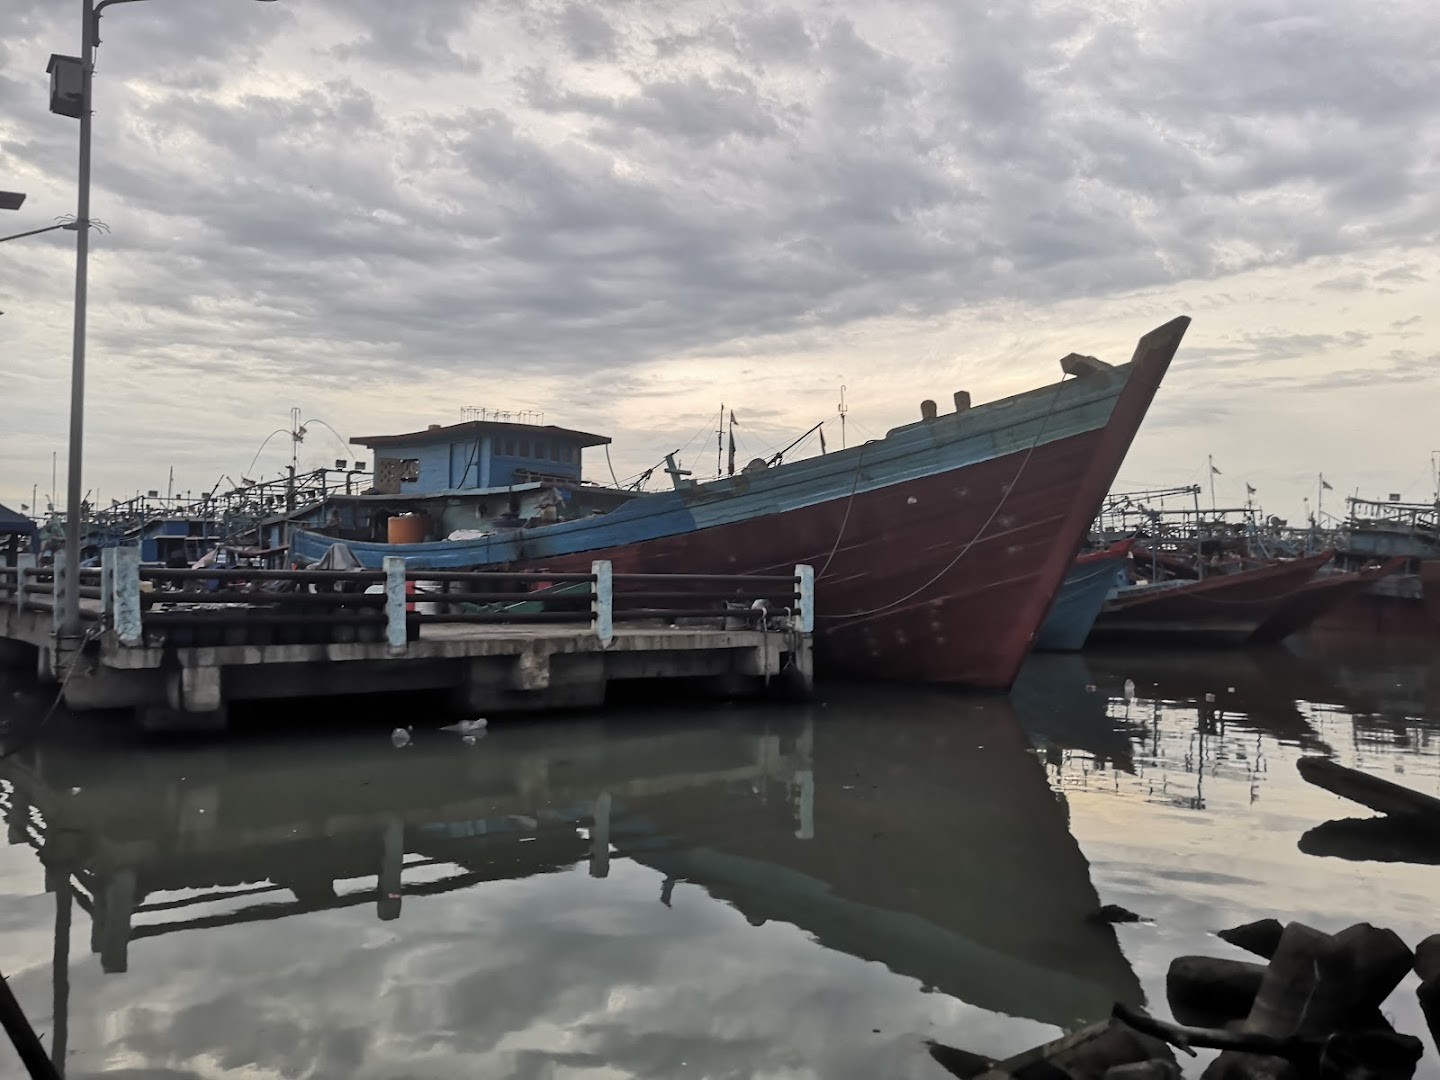 Pelabuhan Perikanan Muara Angke Photo